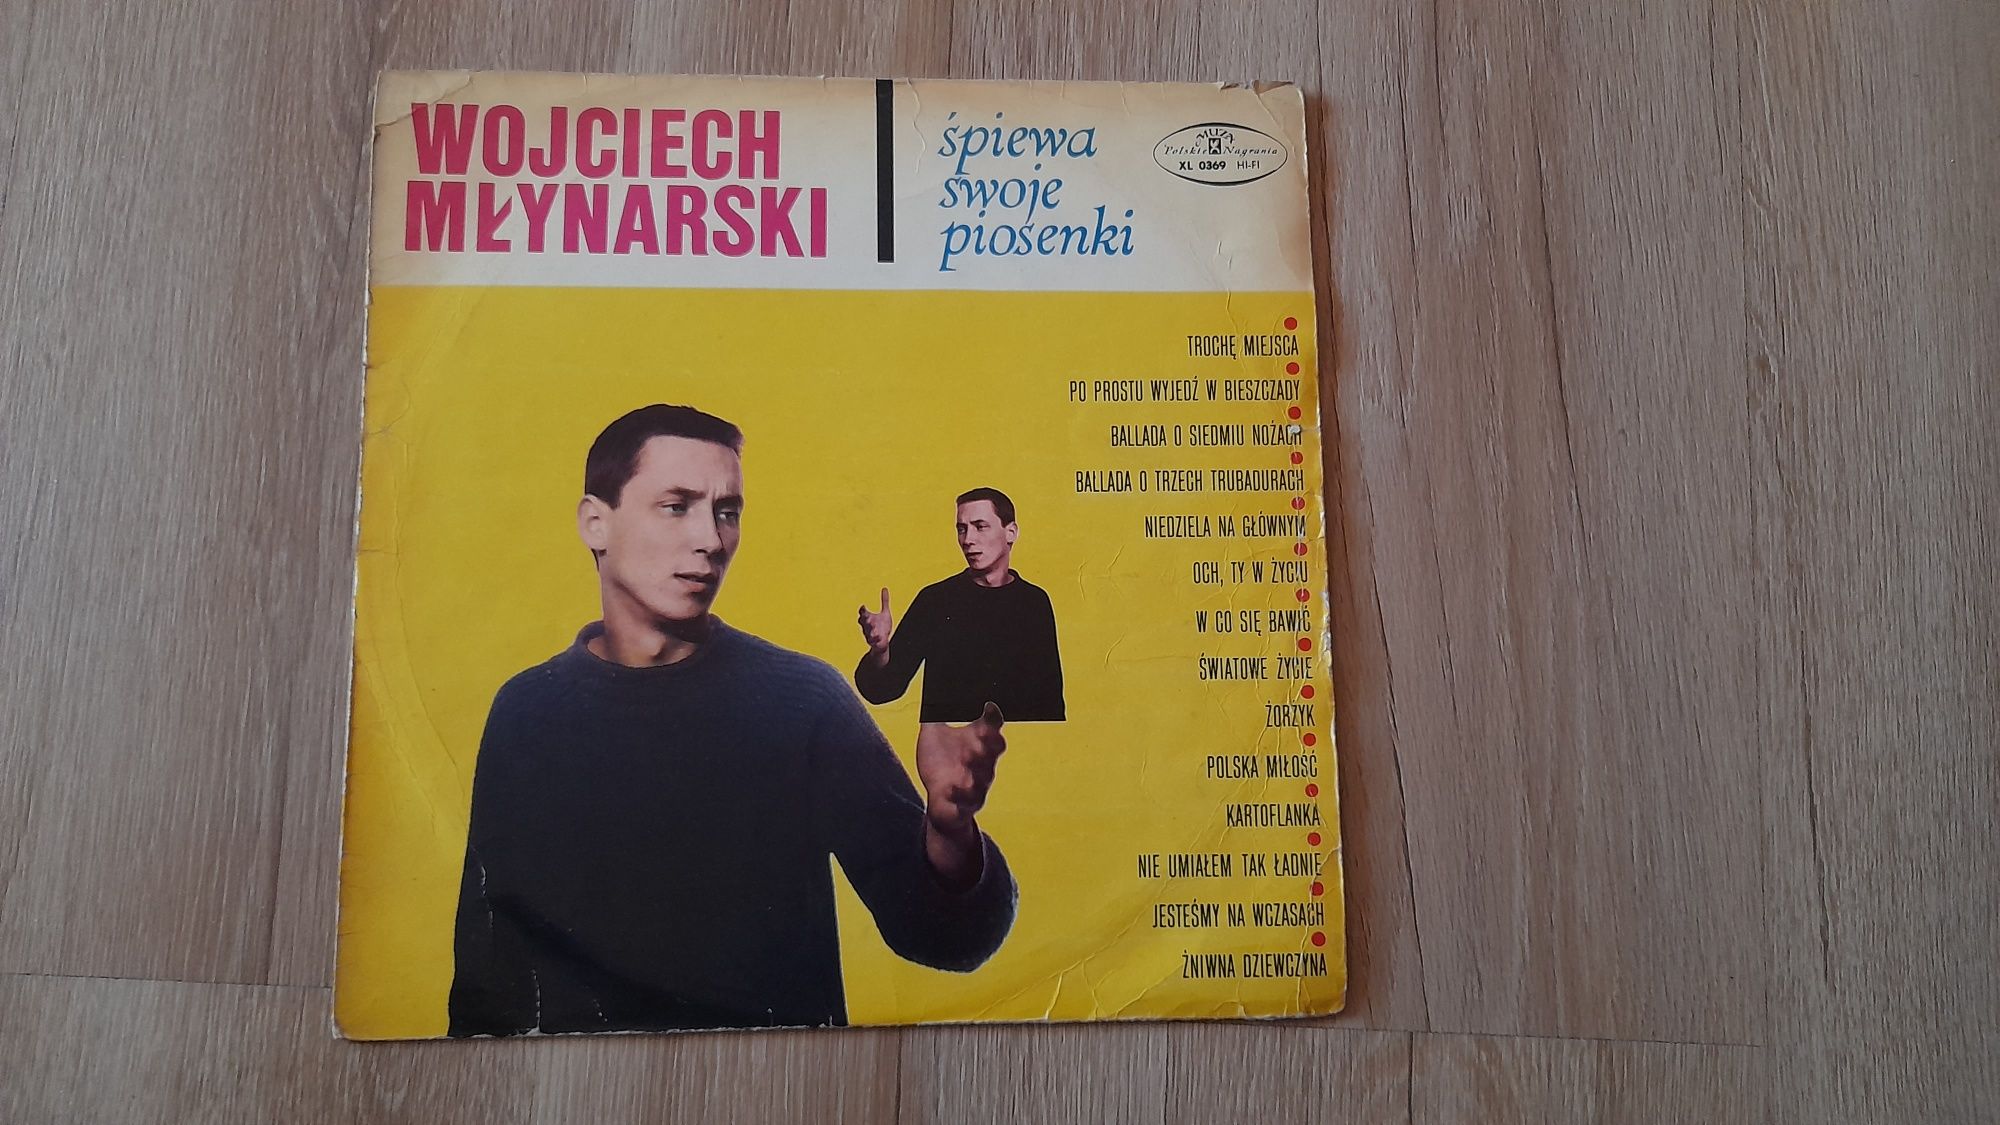 Płyta Winylowa Wojciech Młynarski  - Śpiewa Swoje Przeboje 1967 r